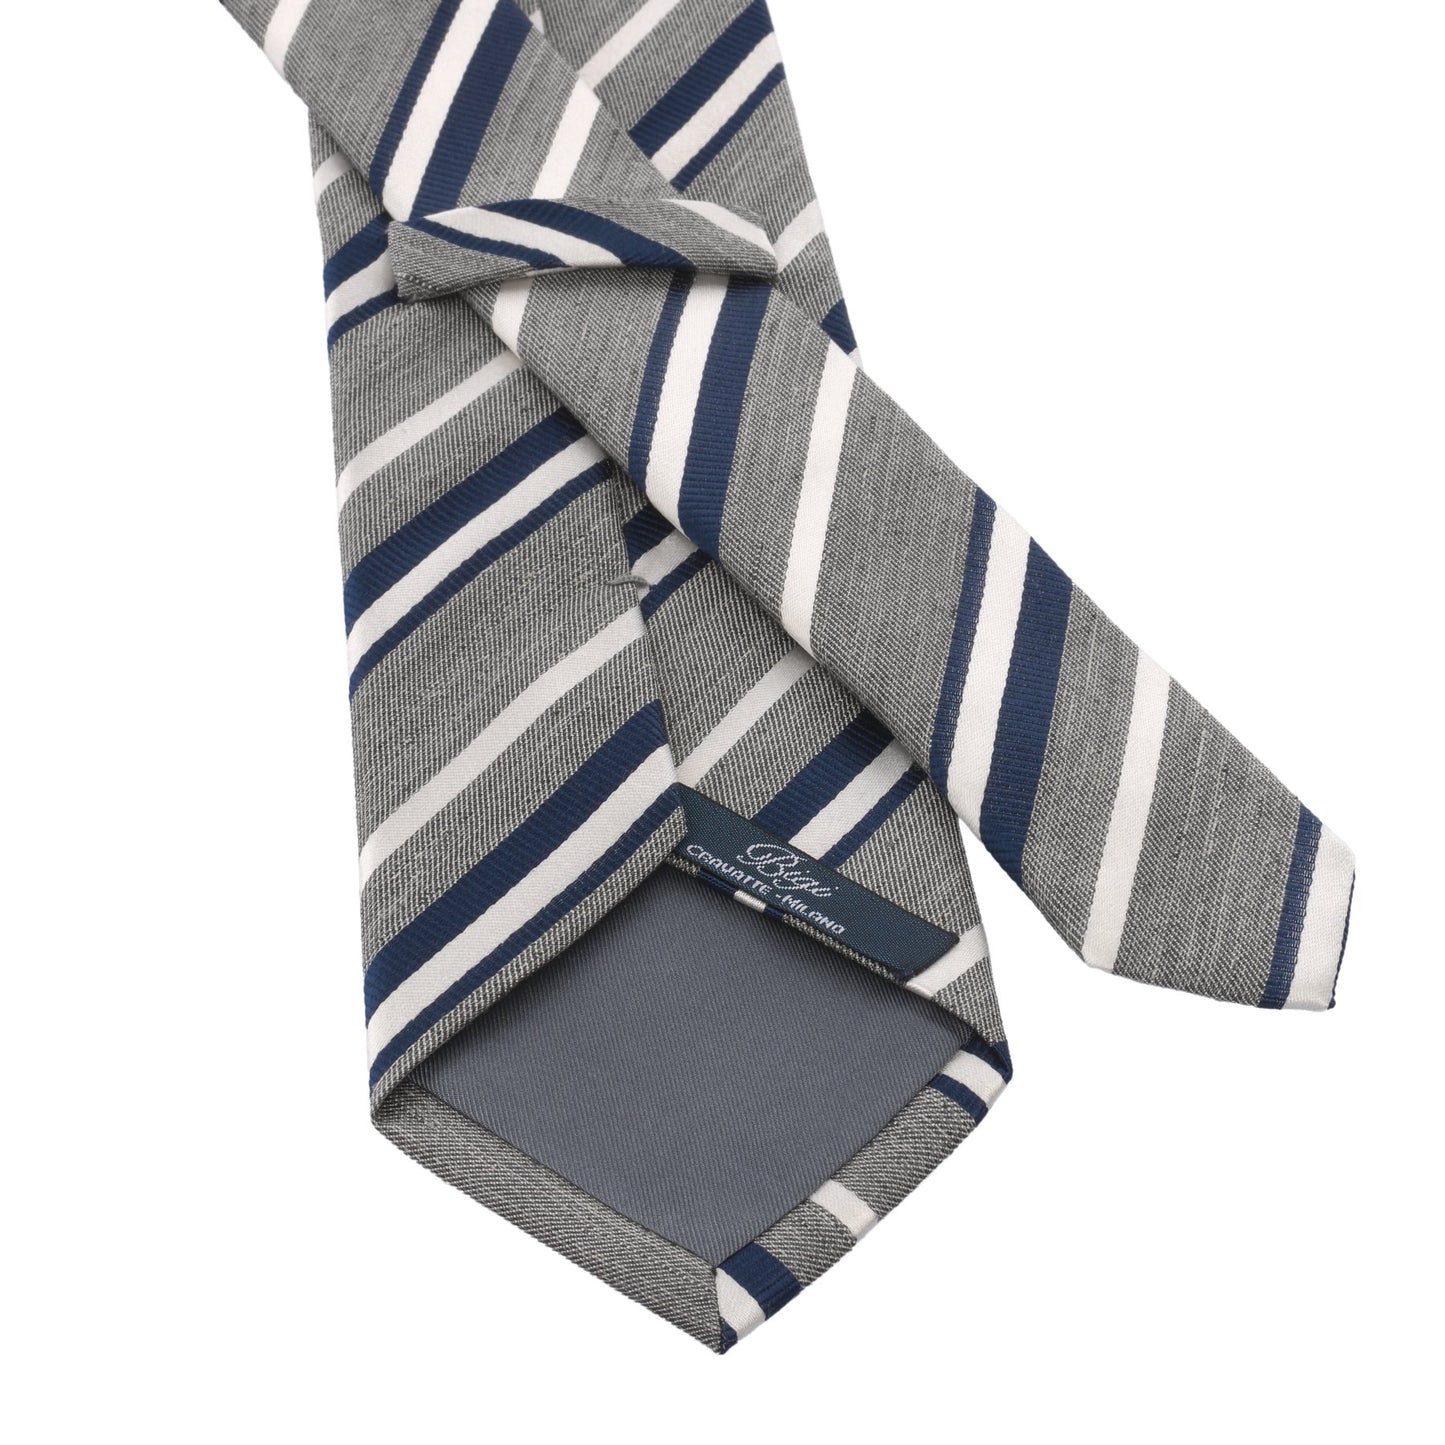 Bigi Regimental Silk - Blend Tie in Silver Grey, Blue and White - SARTALE